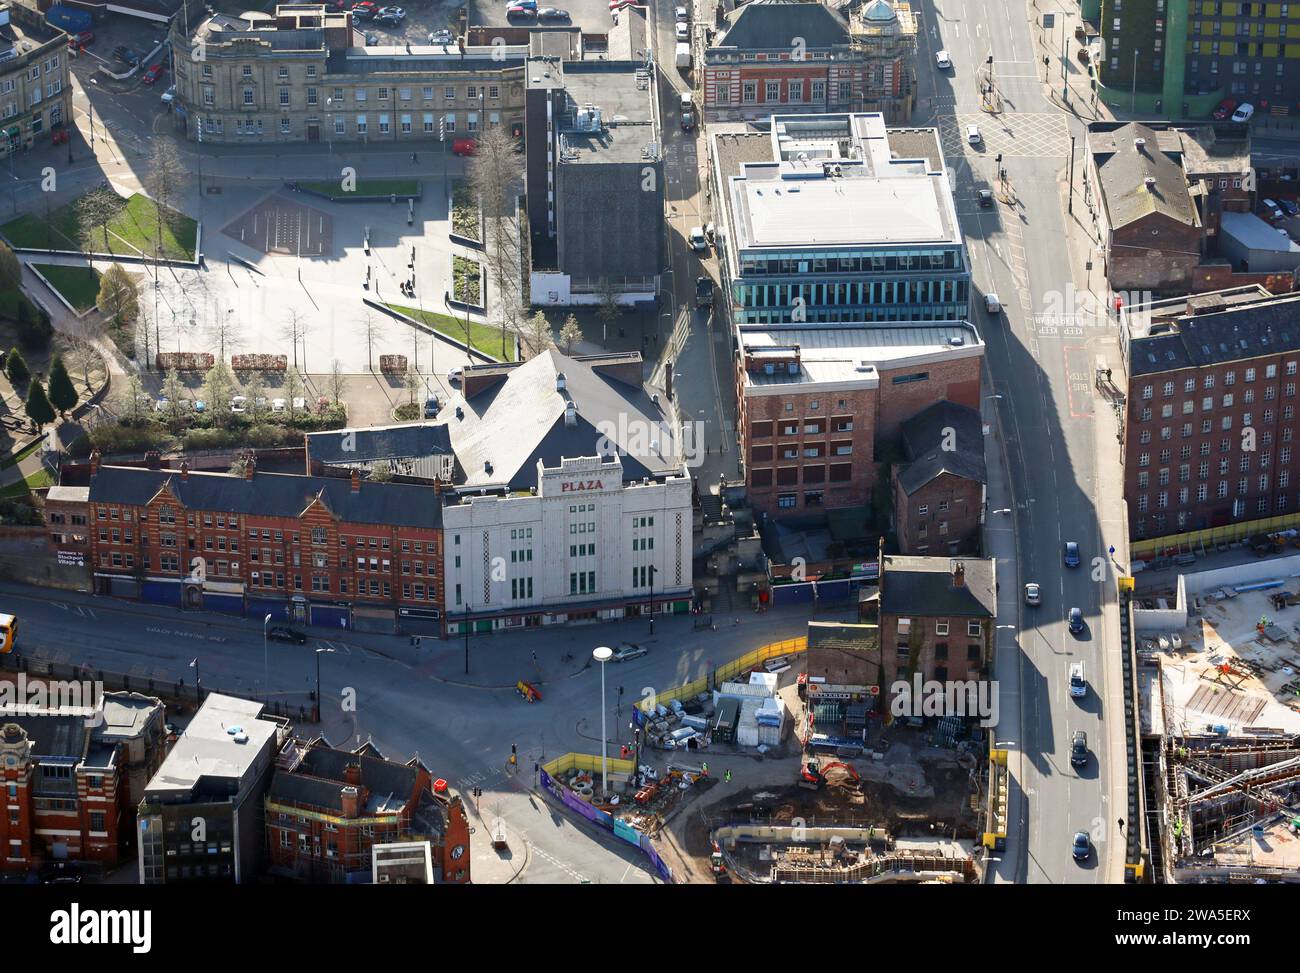 Vue aérienne du centre-ville de Stockport, du Grand Manchester avec la façade blanche du théâtre Plaza Performing Arts en vue à mi-plan Banque D'Images